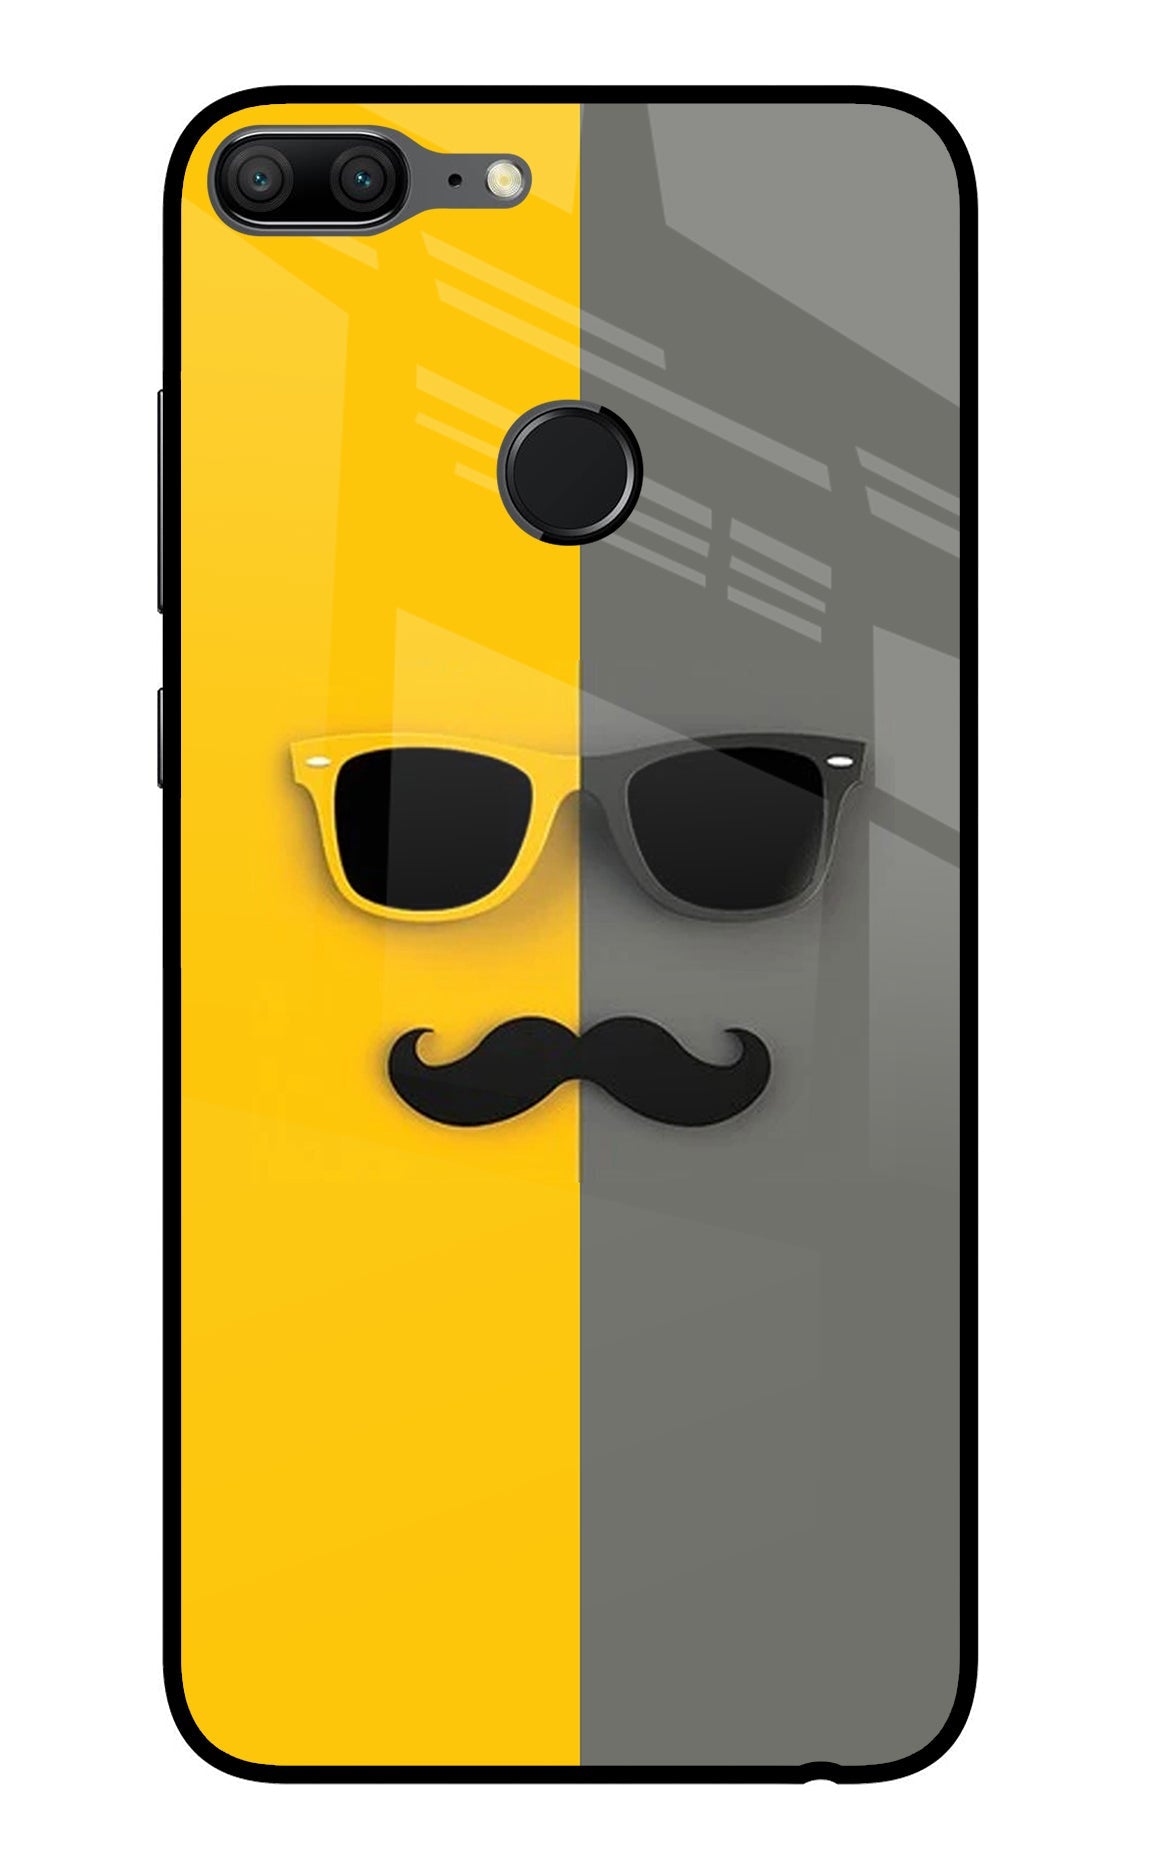 Sunglasses with Mustache Honor 9 Lite Glass Case